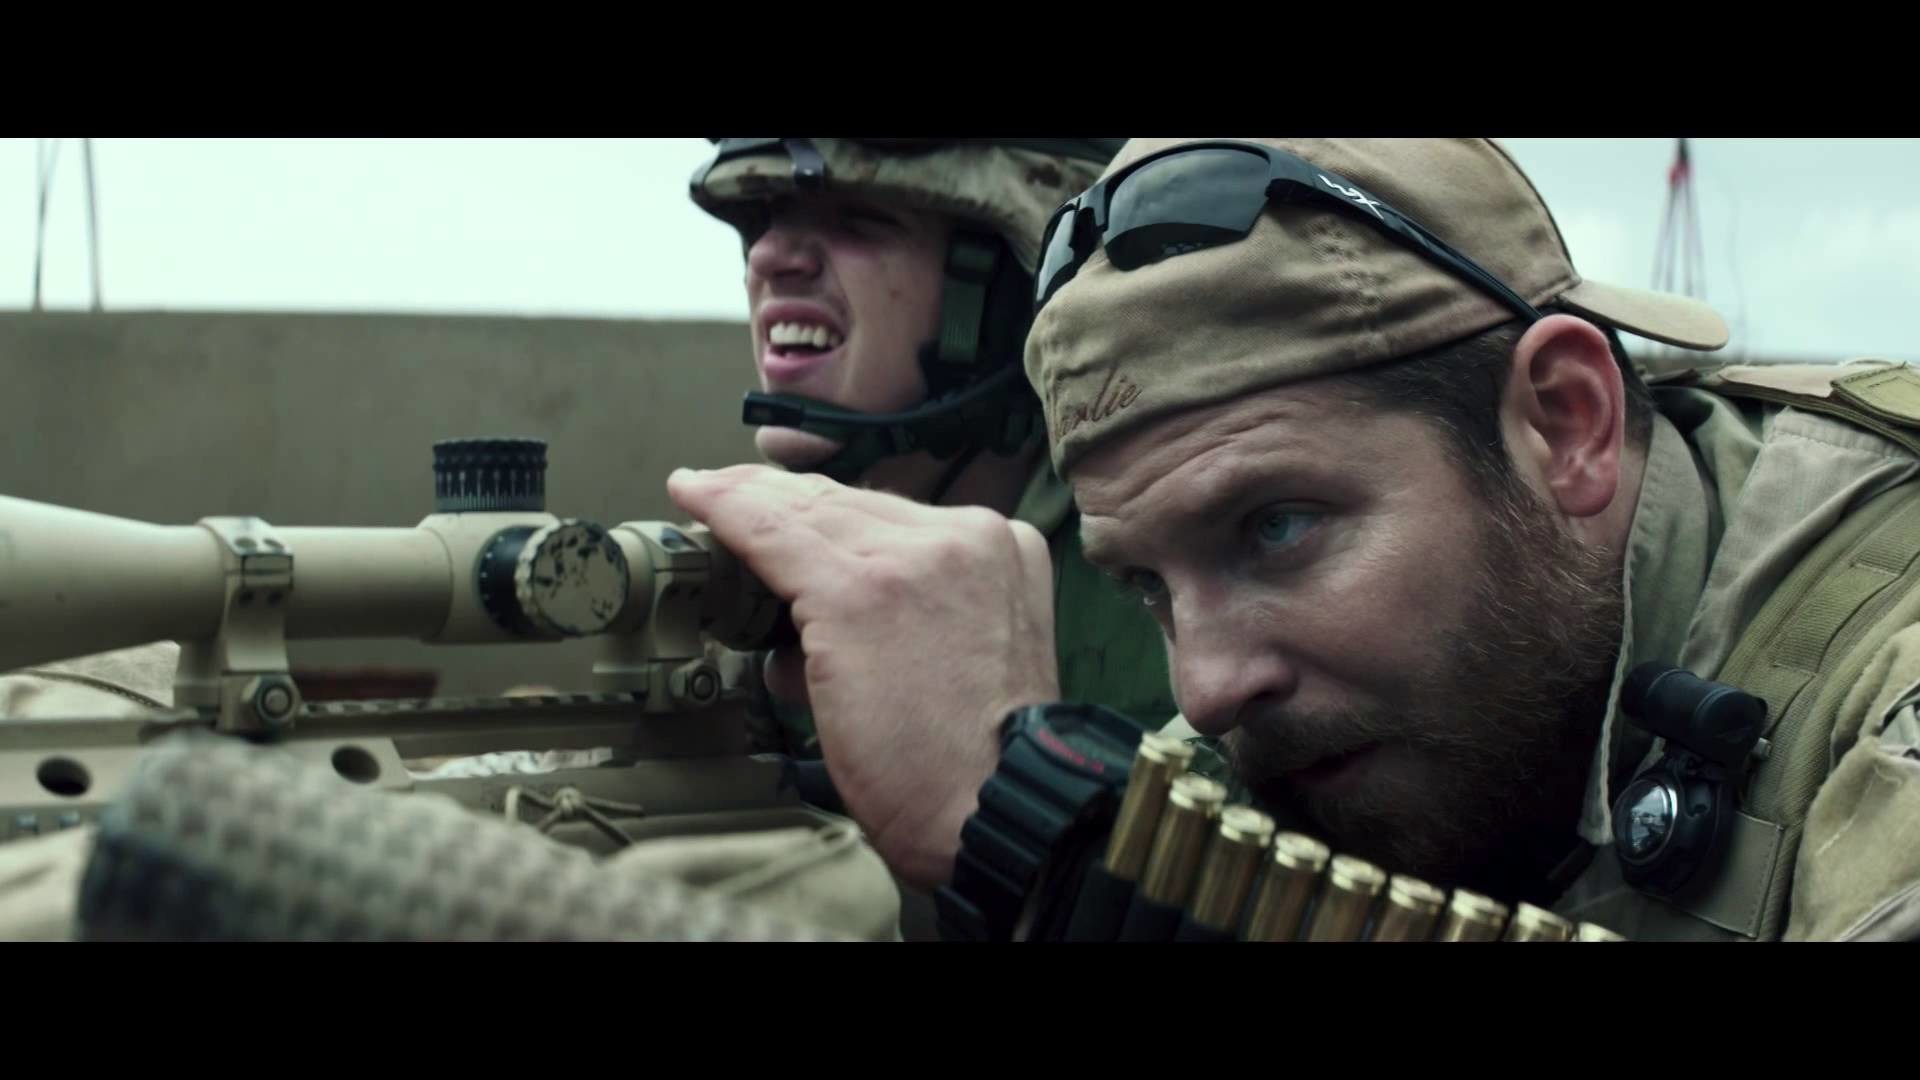 American Sniper 2014 Action, Biography, Thriller HD Movie Trailer Bradley Cooper, Sienna Miller